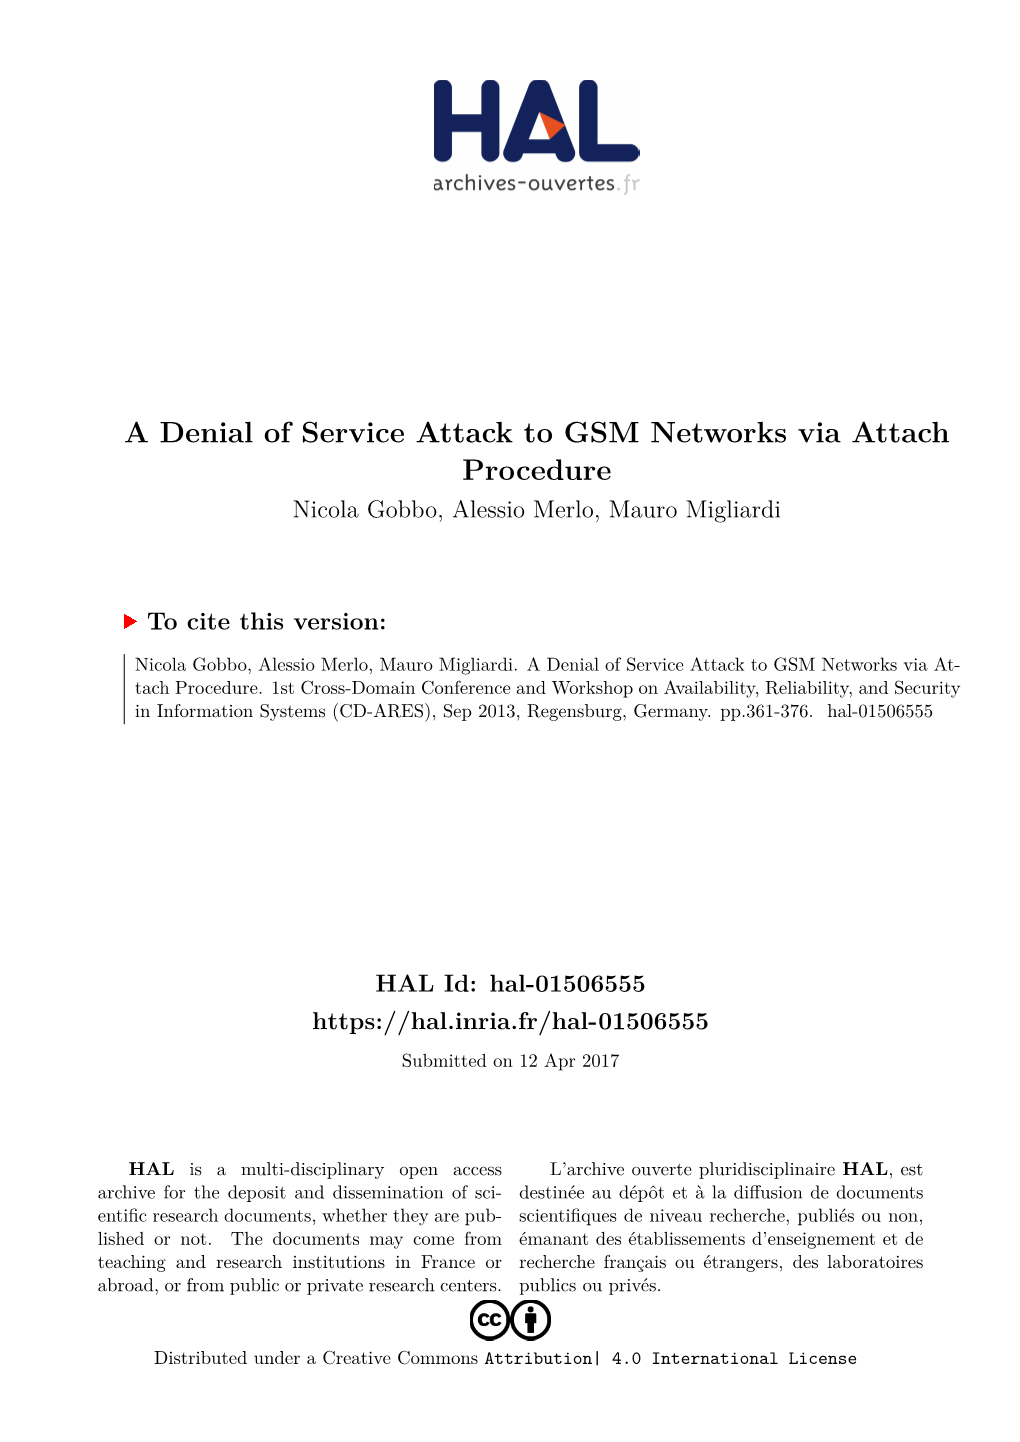 A Denial of Service Attack to GSM Networks Via Attach Procedure Nicola Gobbo, Alessio Merlo, Mauro Migliardi